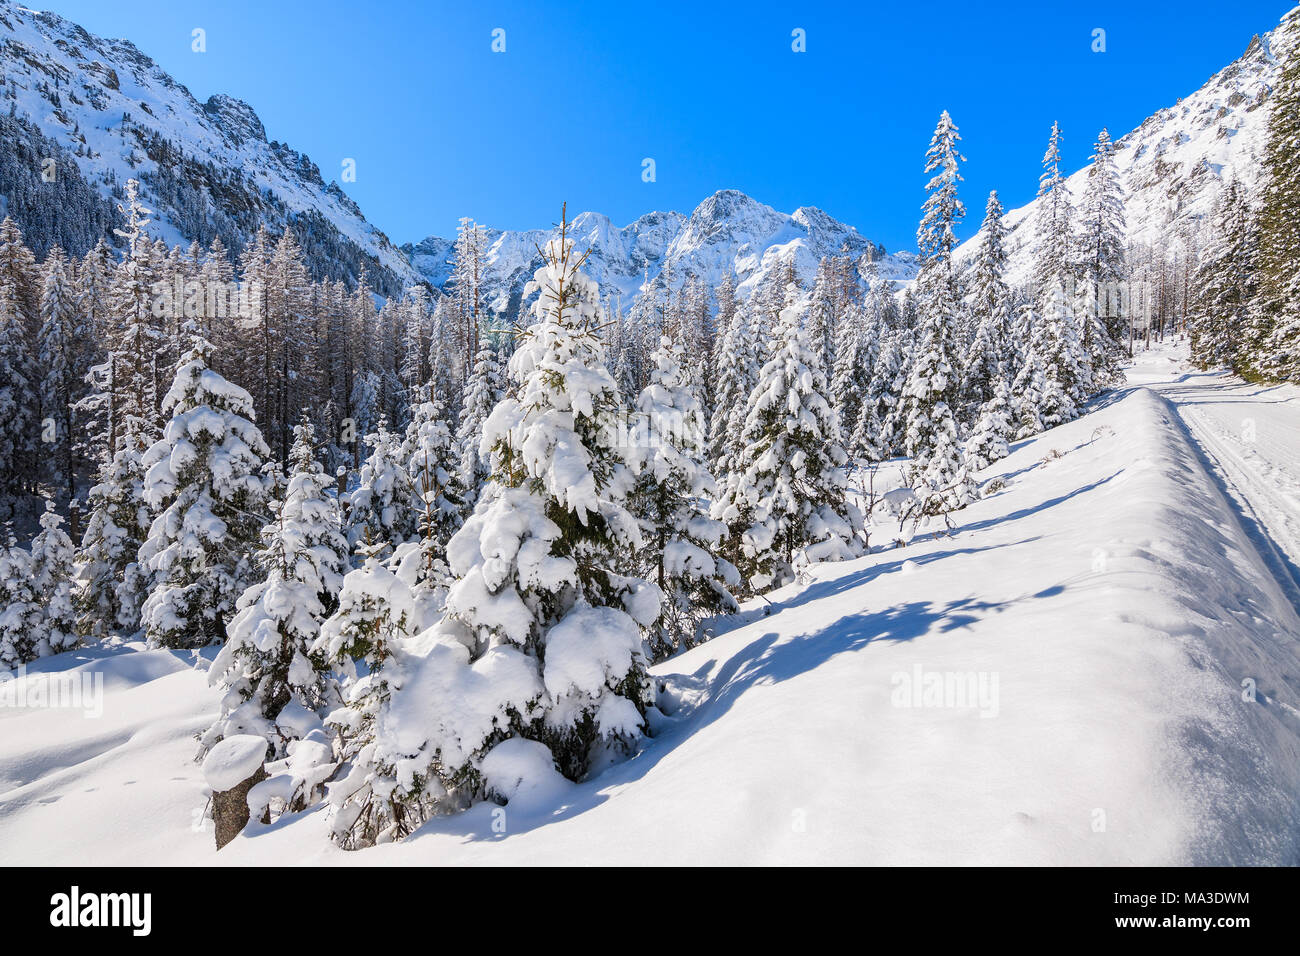 En épinettes vallée près du lac Morskie Oko en saison d'hiver, Tatras, Pologne Banque D'Images